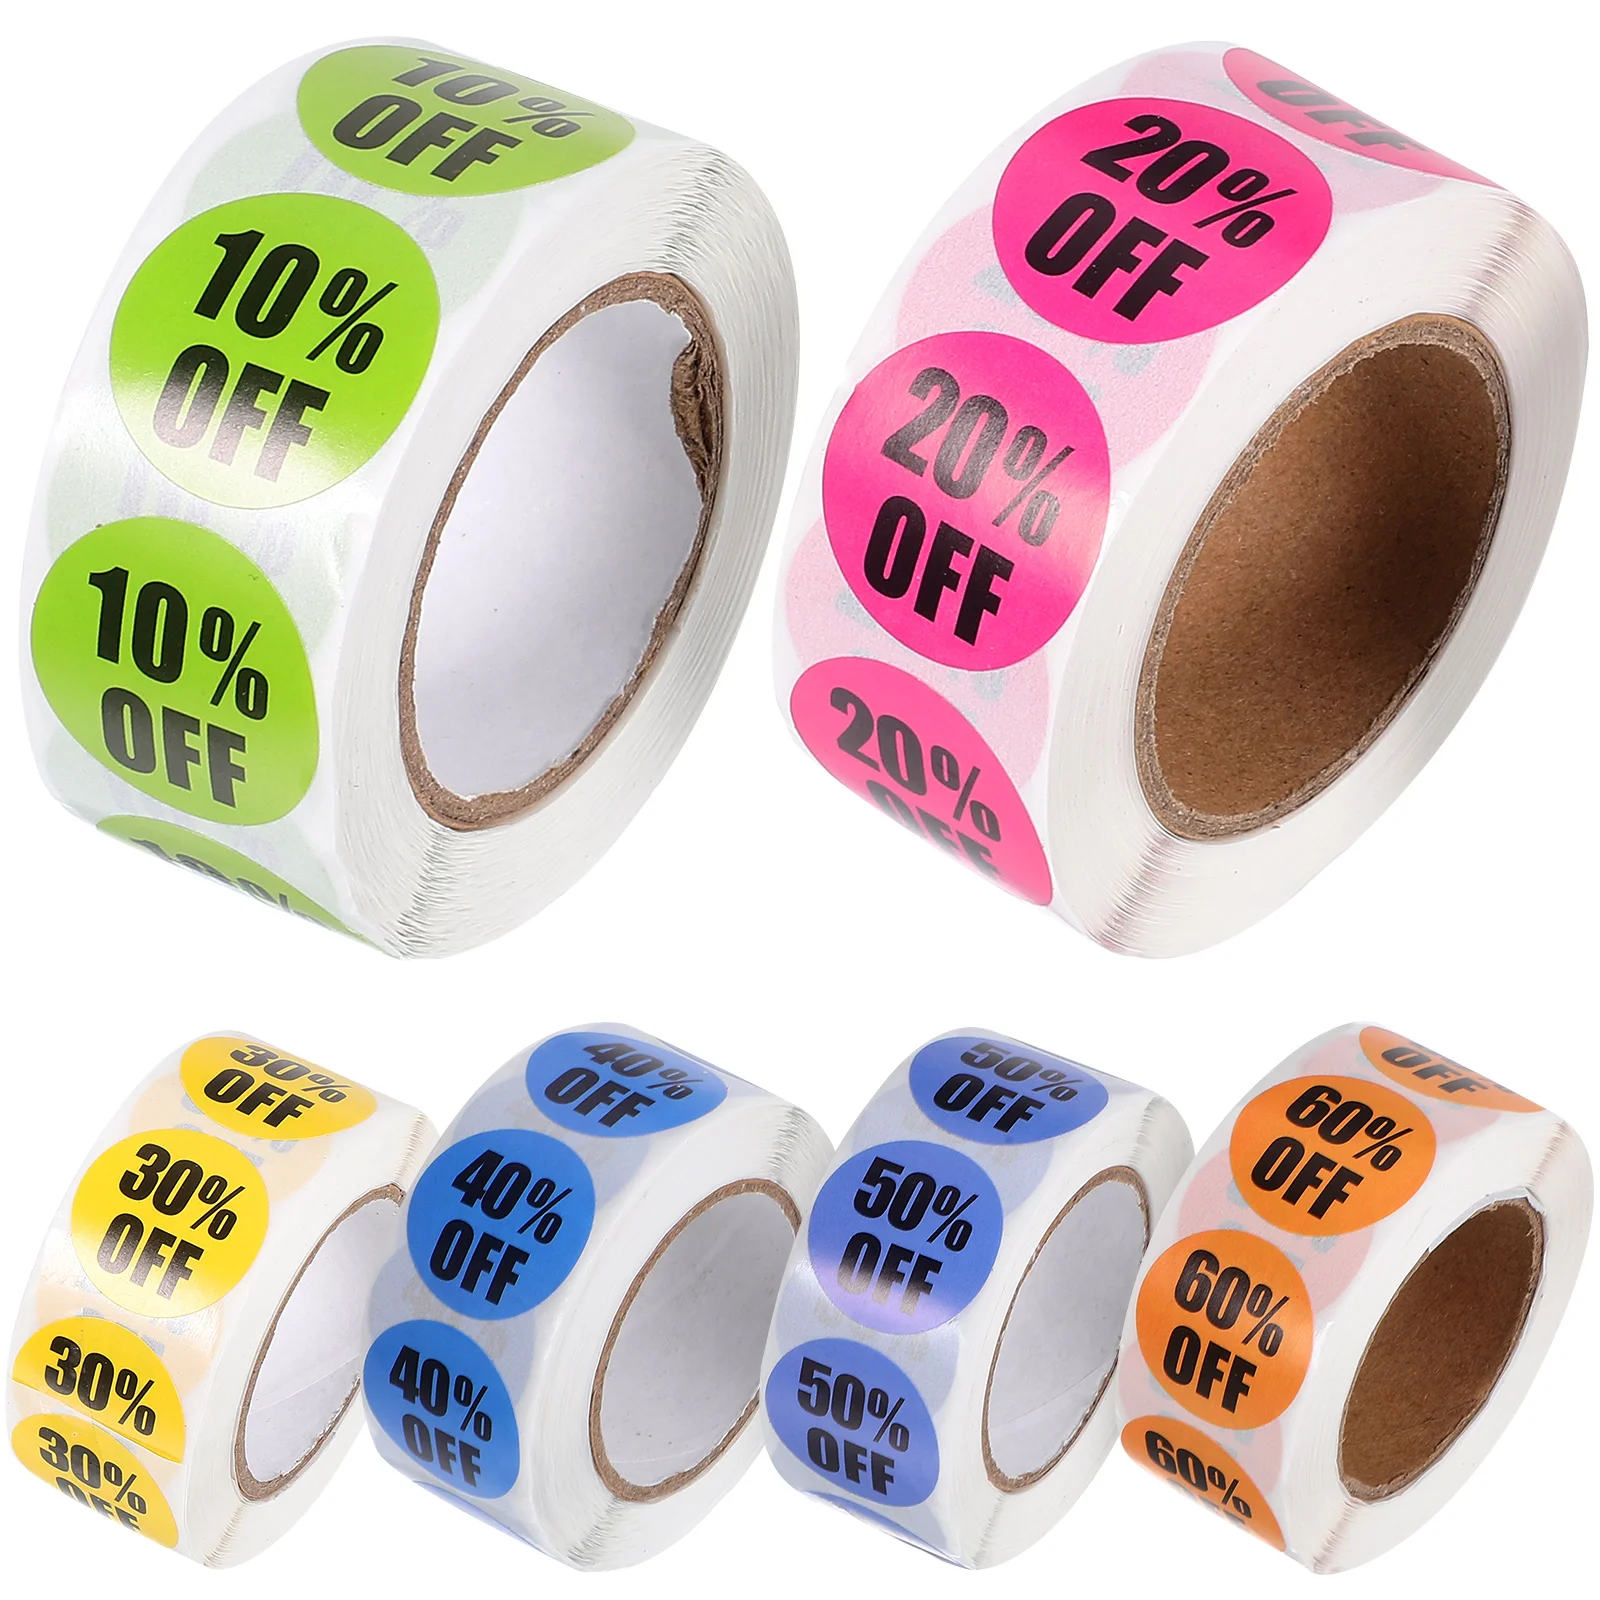 

6 рулонов круглых процентных наклеек, маленькие наклейки со скидкой, цветные круглые наклейки, этикетки для розничного магазина